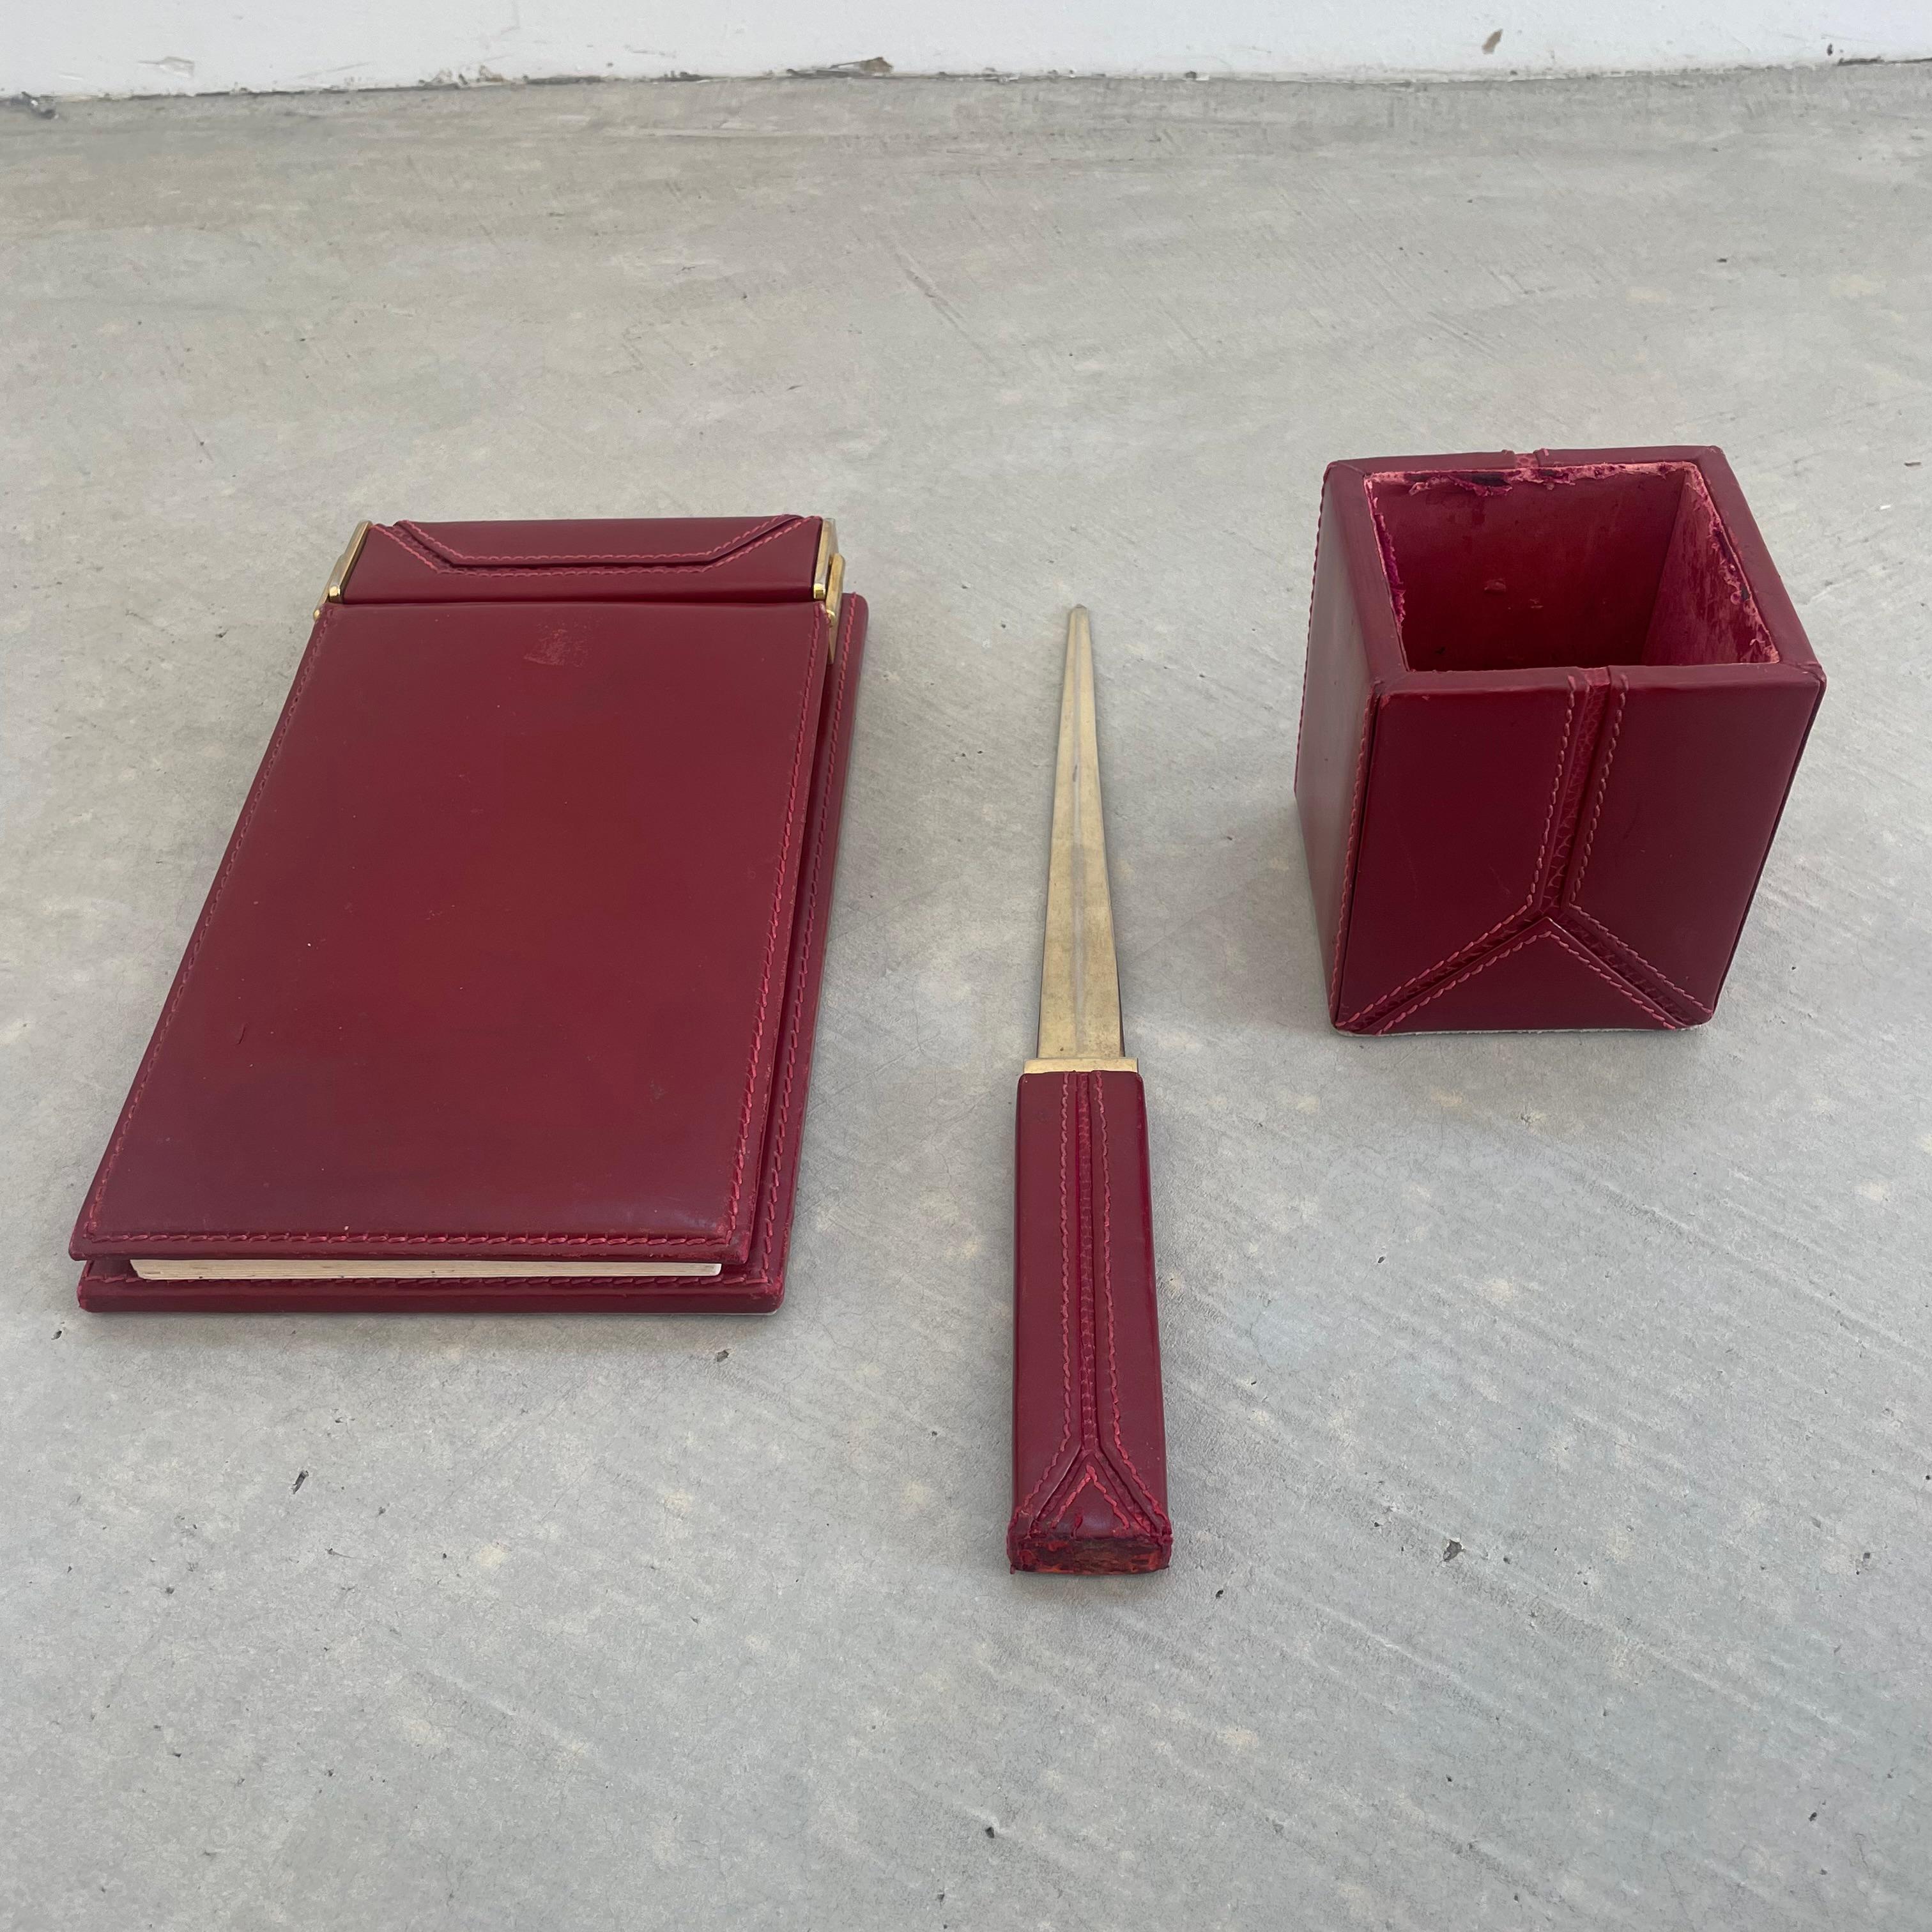 Hübsches Schreibtischset aus rotem Leder von Gucci. Hergestellt in Italien, ca. 1980er Jahre. Das Set besteht aus einem Notizblock mit Papier, einem Stifthalter und einem Brieföffner. Reiche Farbe zu Leder mit Eidechsenhaut kontrastiert mit dem